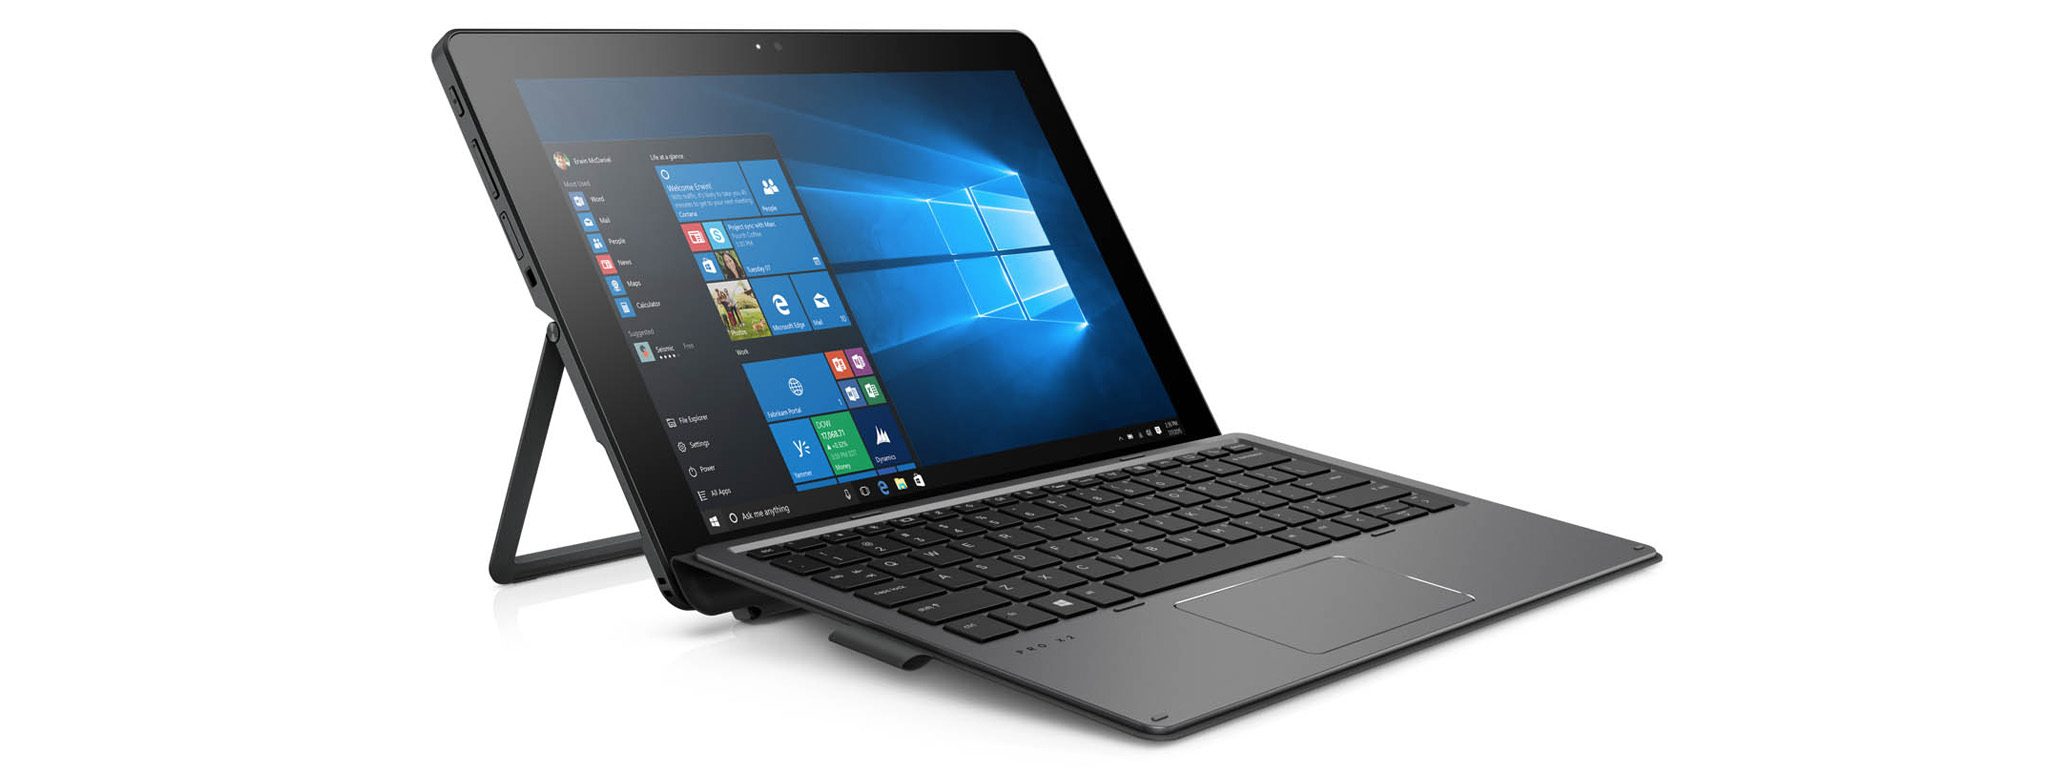 #MWC17: HP Pro x2 612 G2 - giống Surface, Windows 10, chuẩn siêu bền MIL-STD-810G, giá từ 899 USD